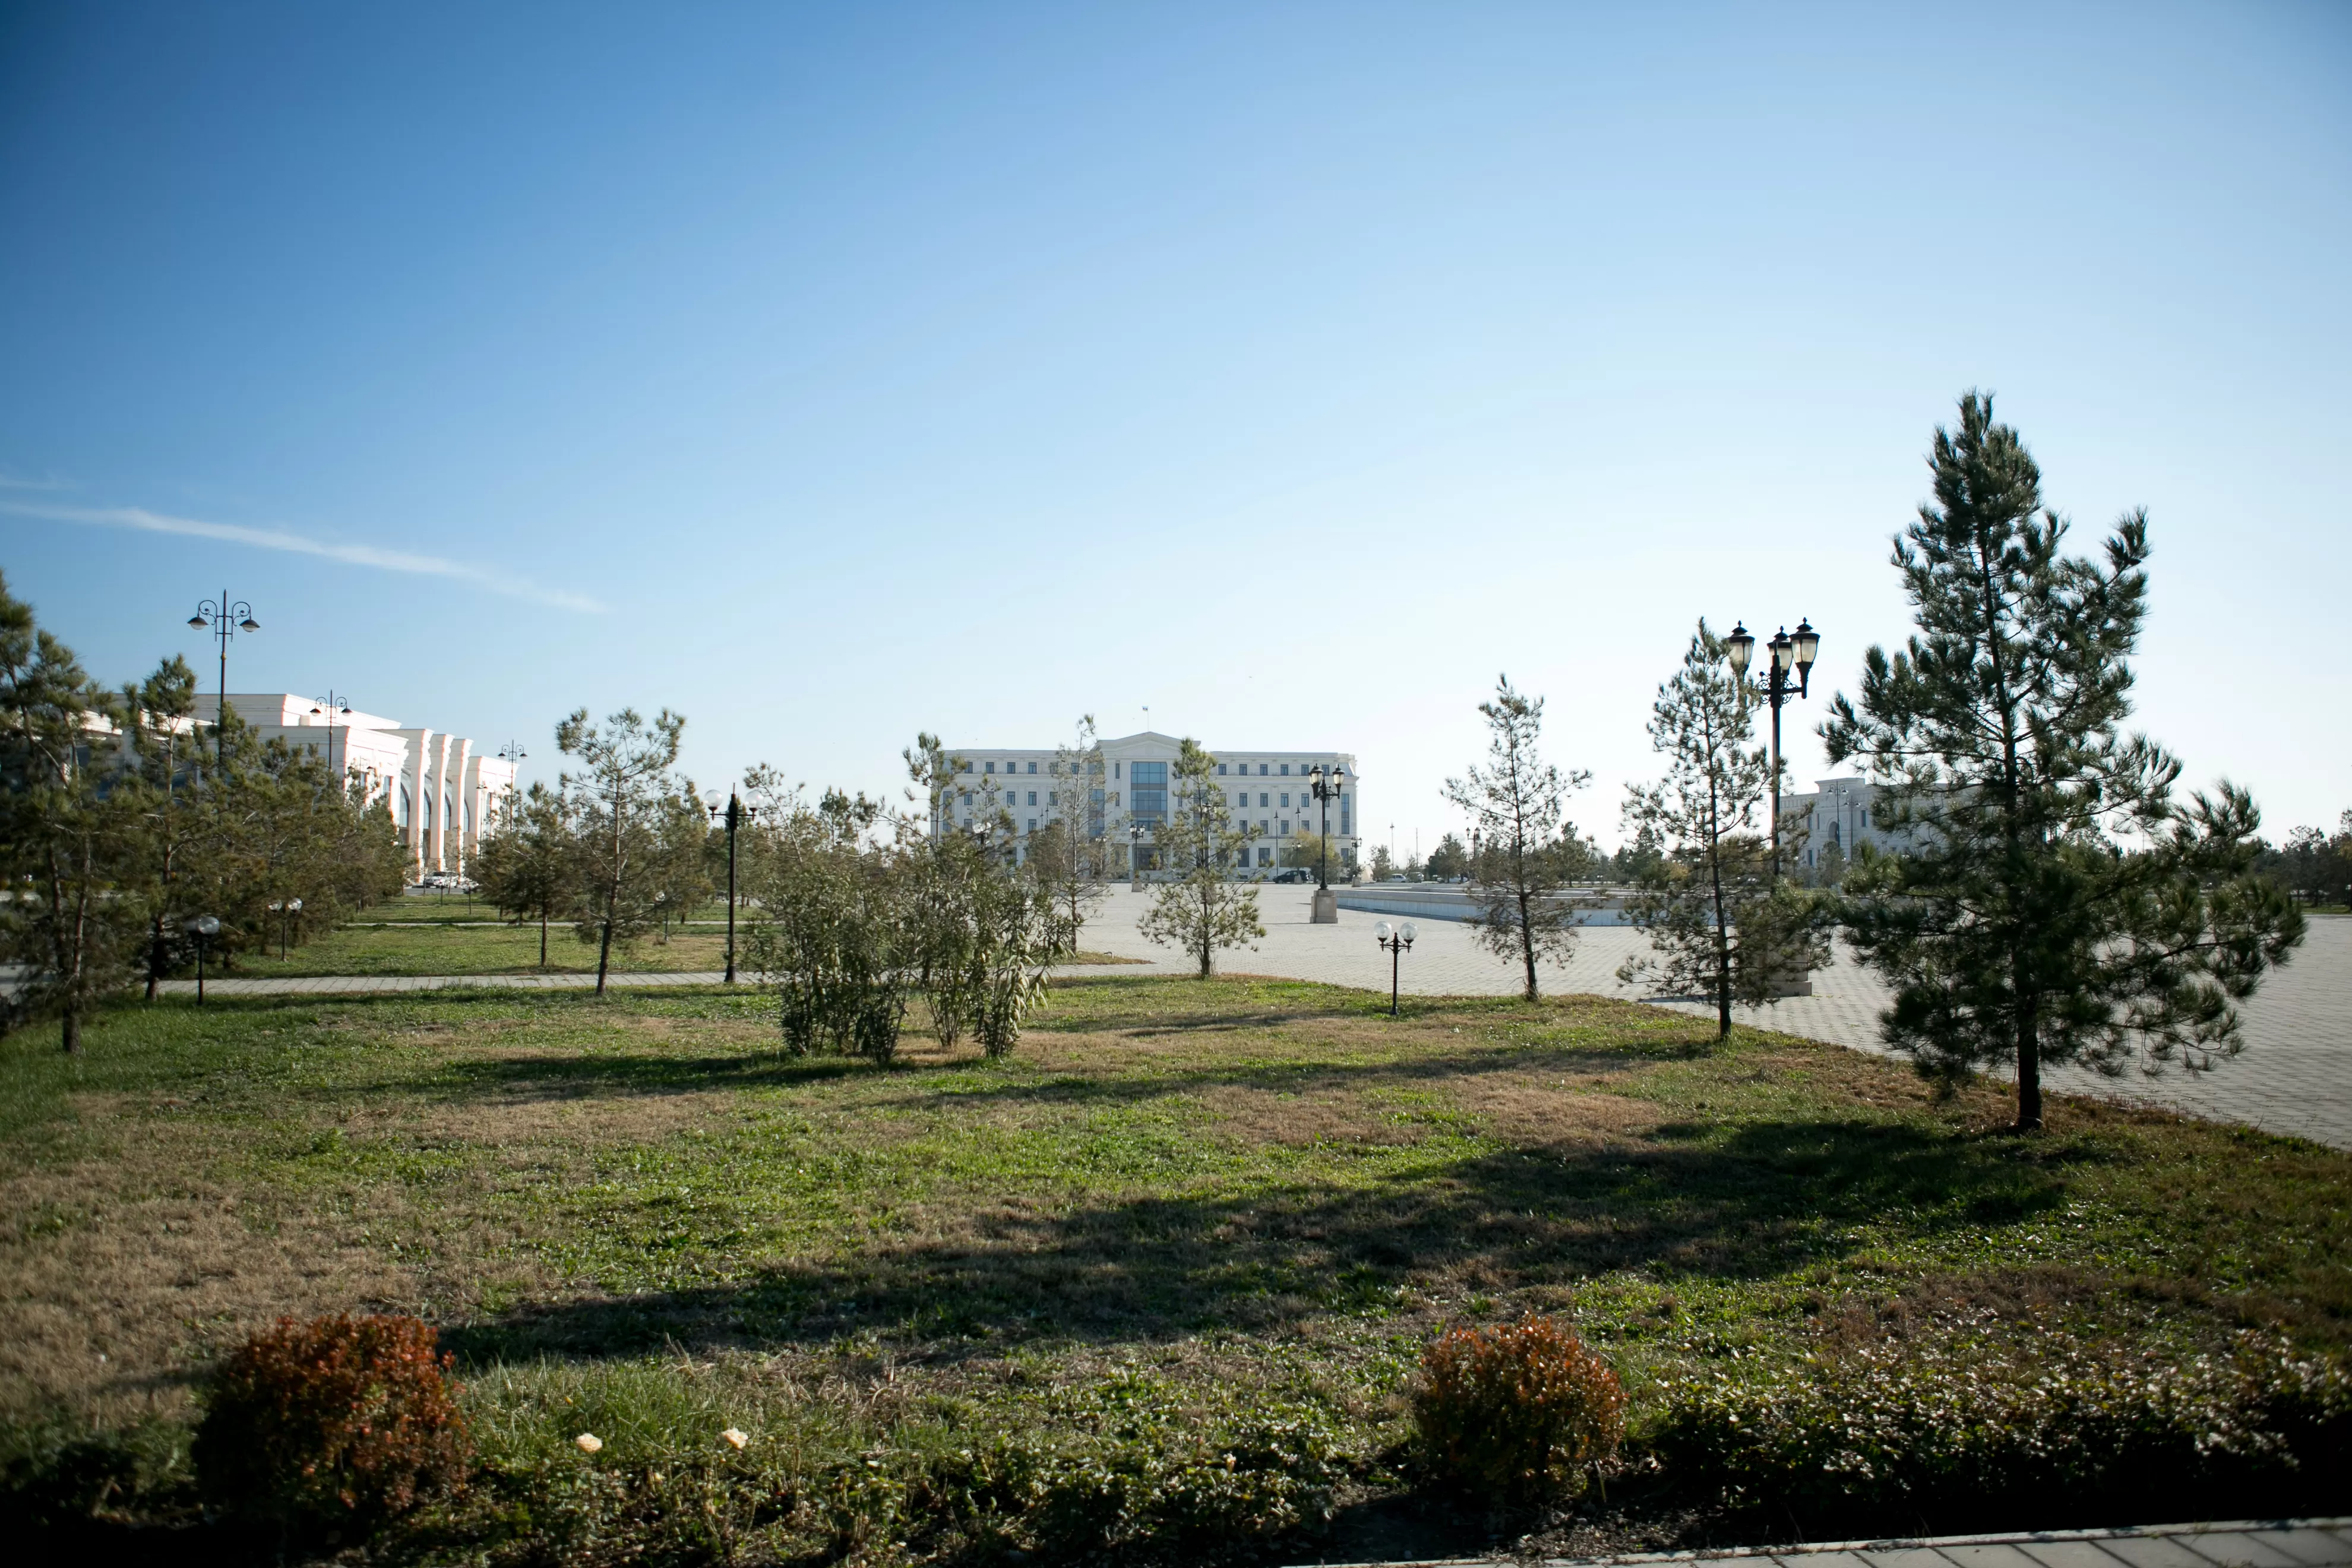 Agdash district park